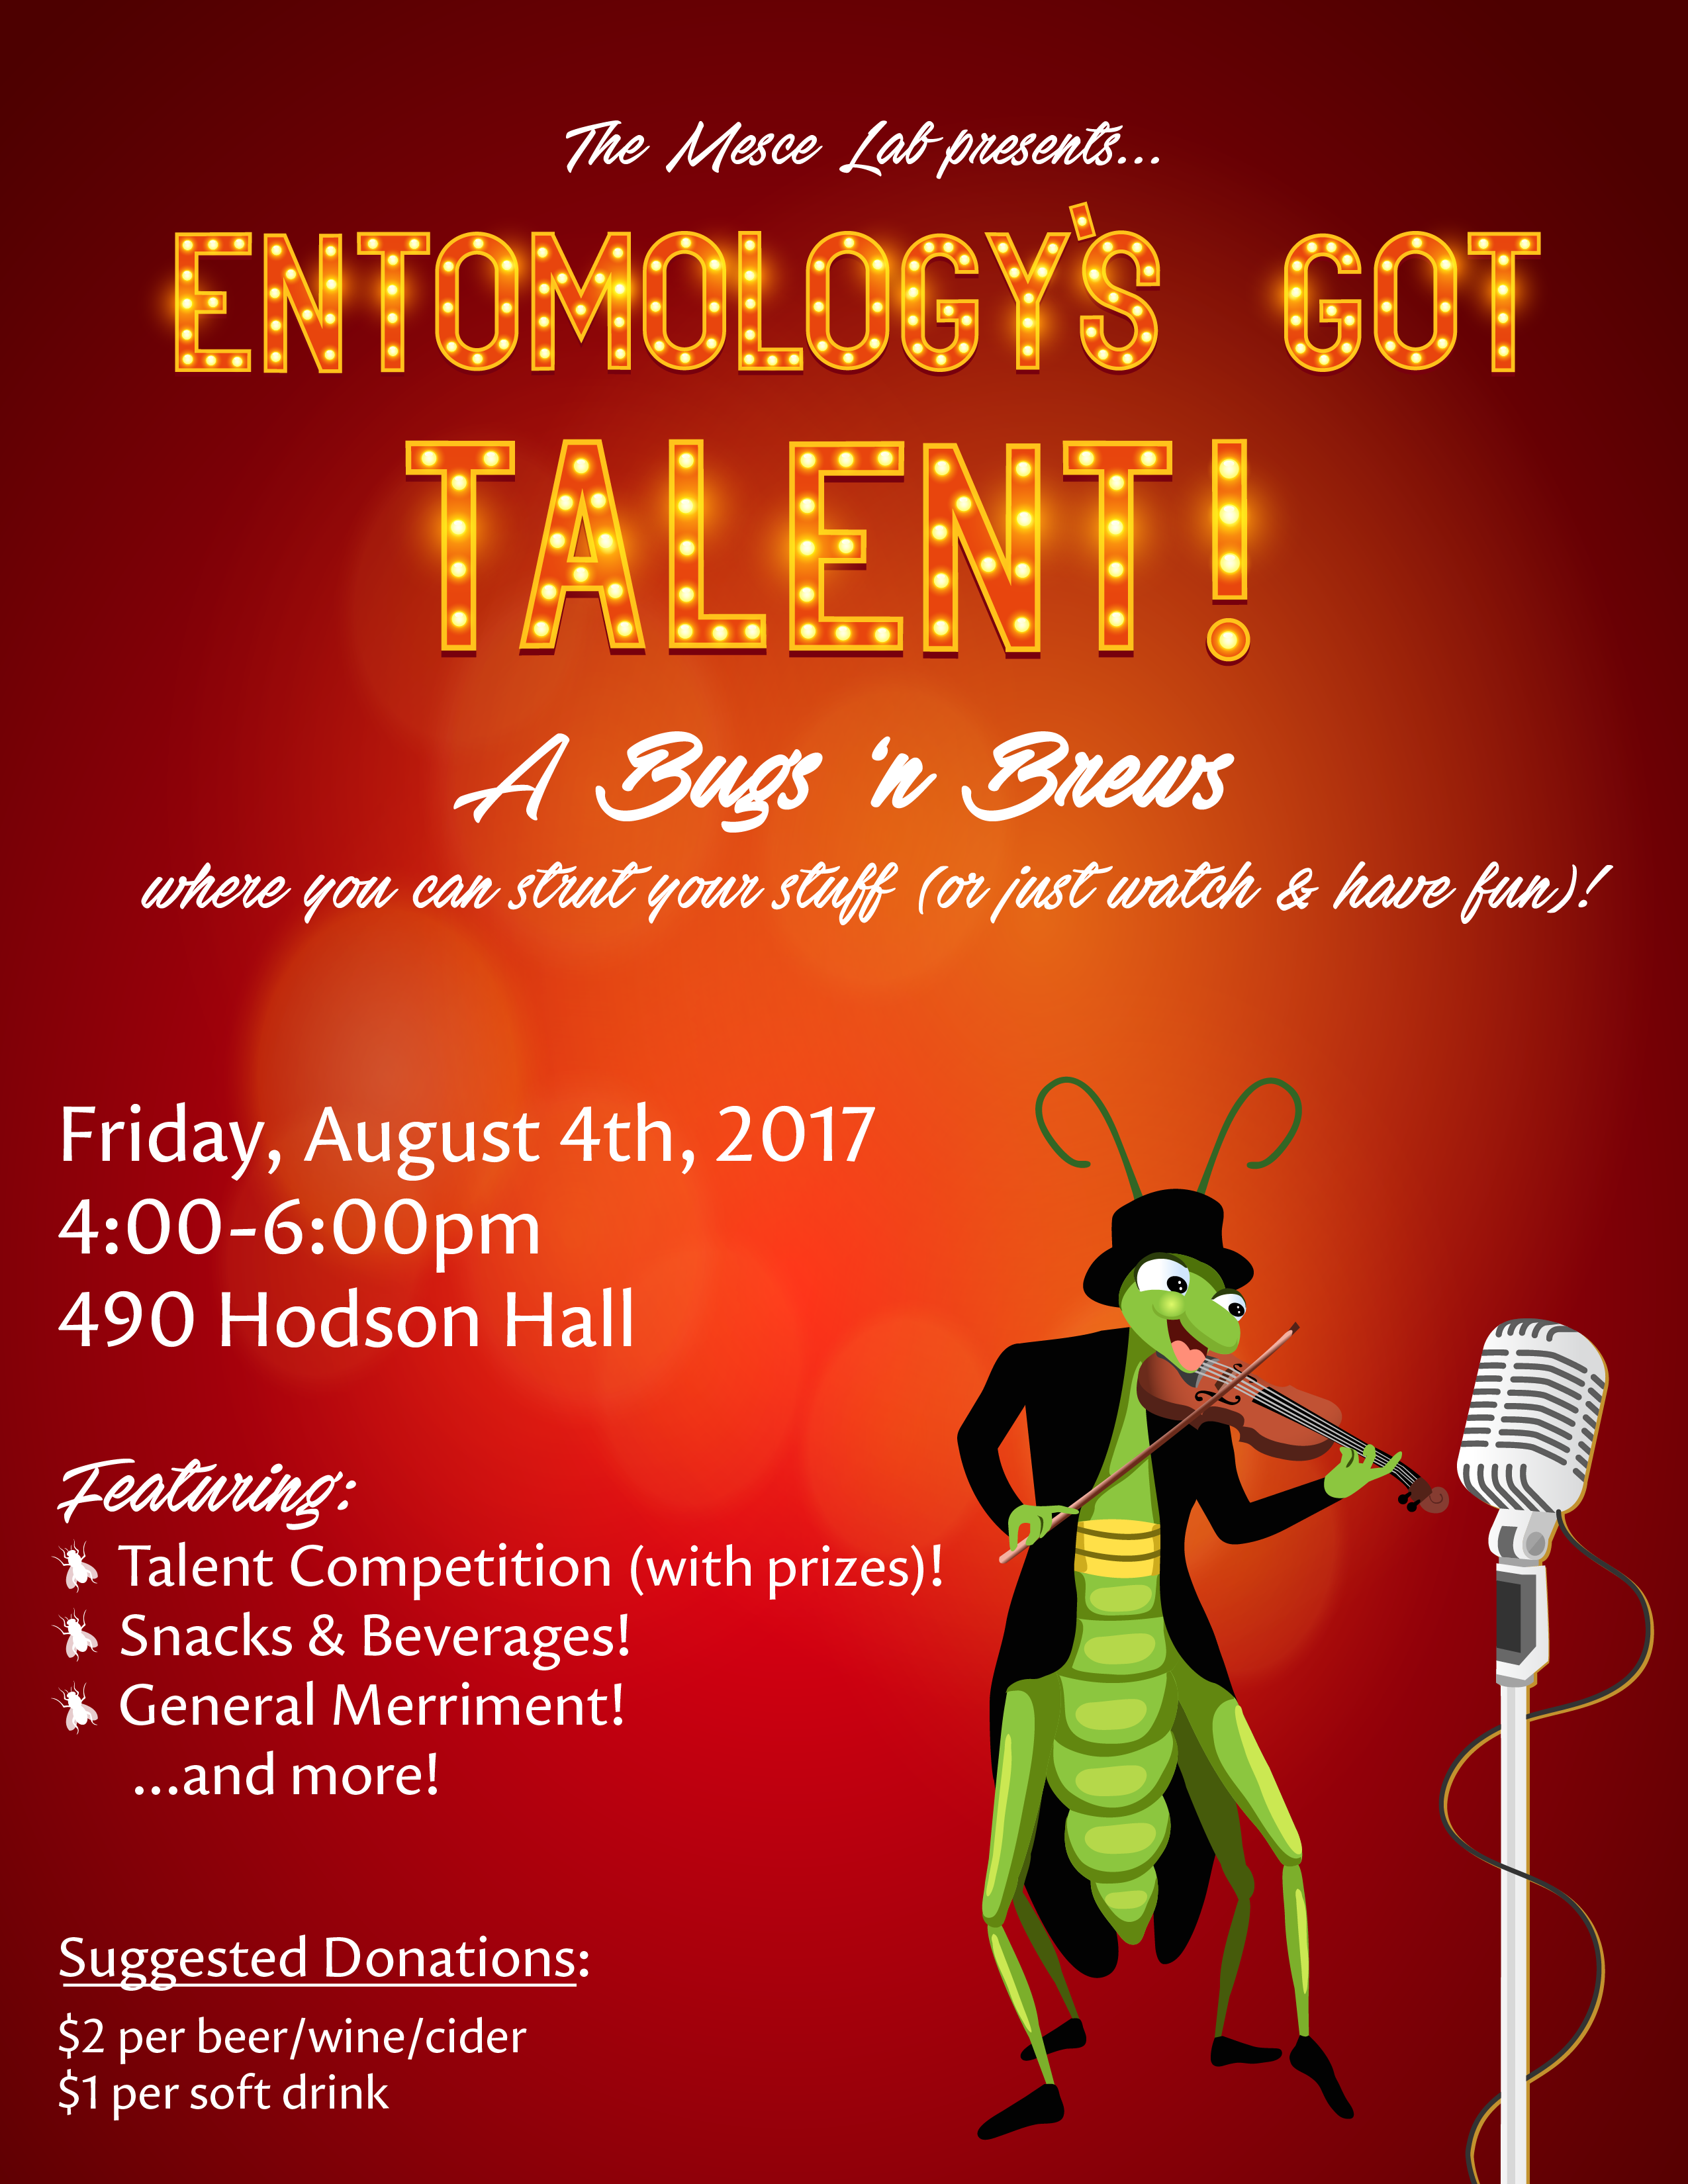 Entomology's Got Talent!